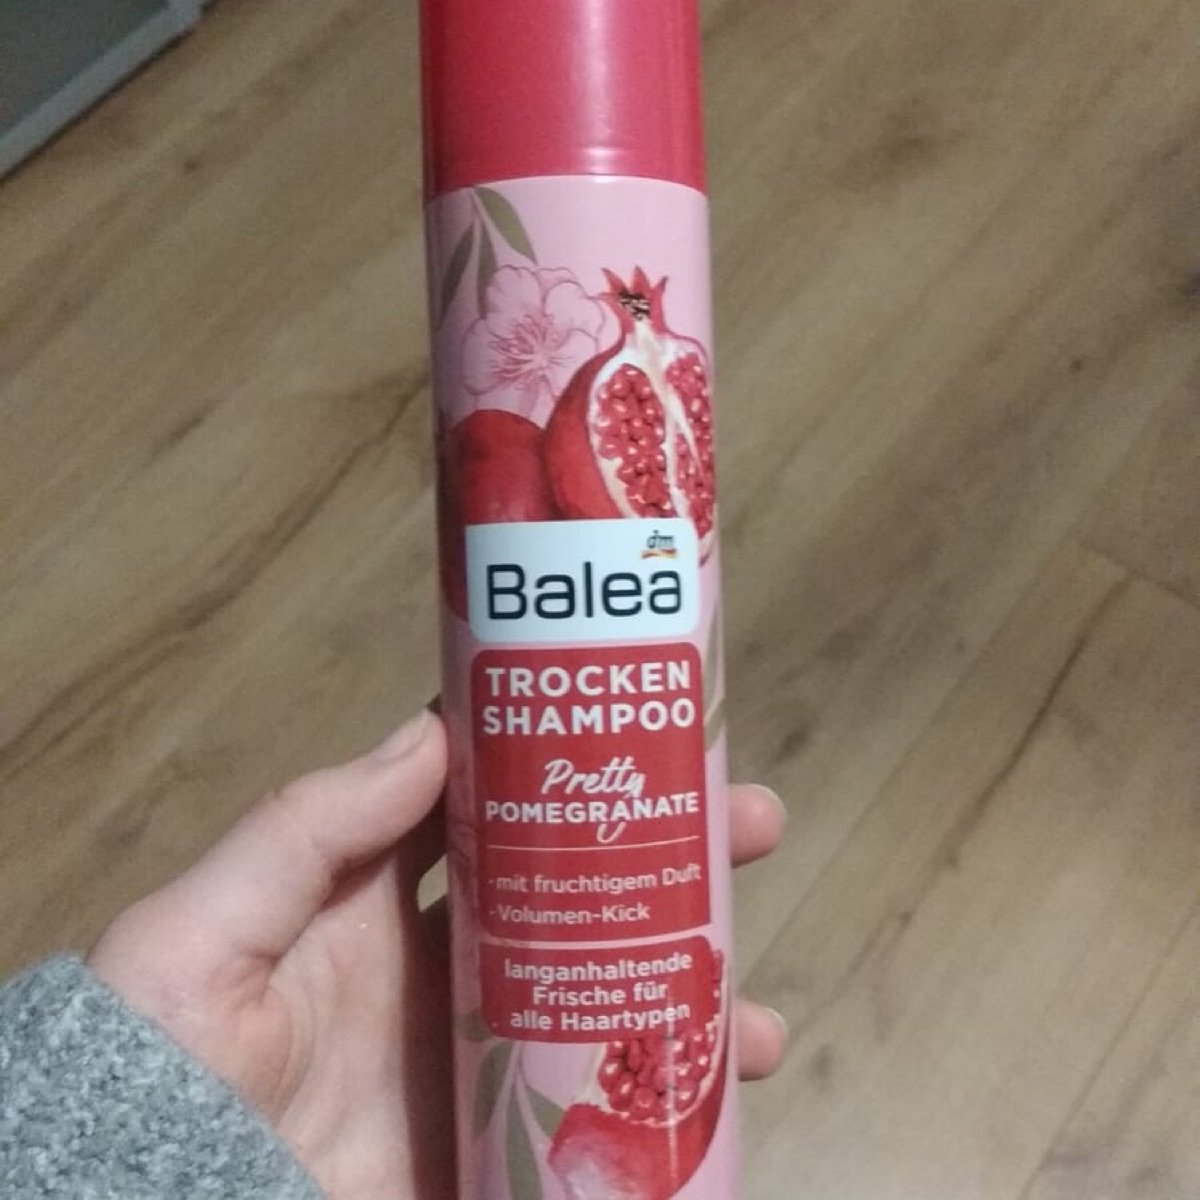 Balea Trocken Shampoo Fruity Dreams Reviews | abillion